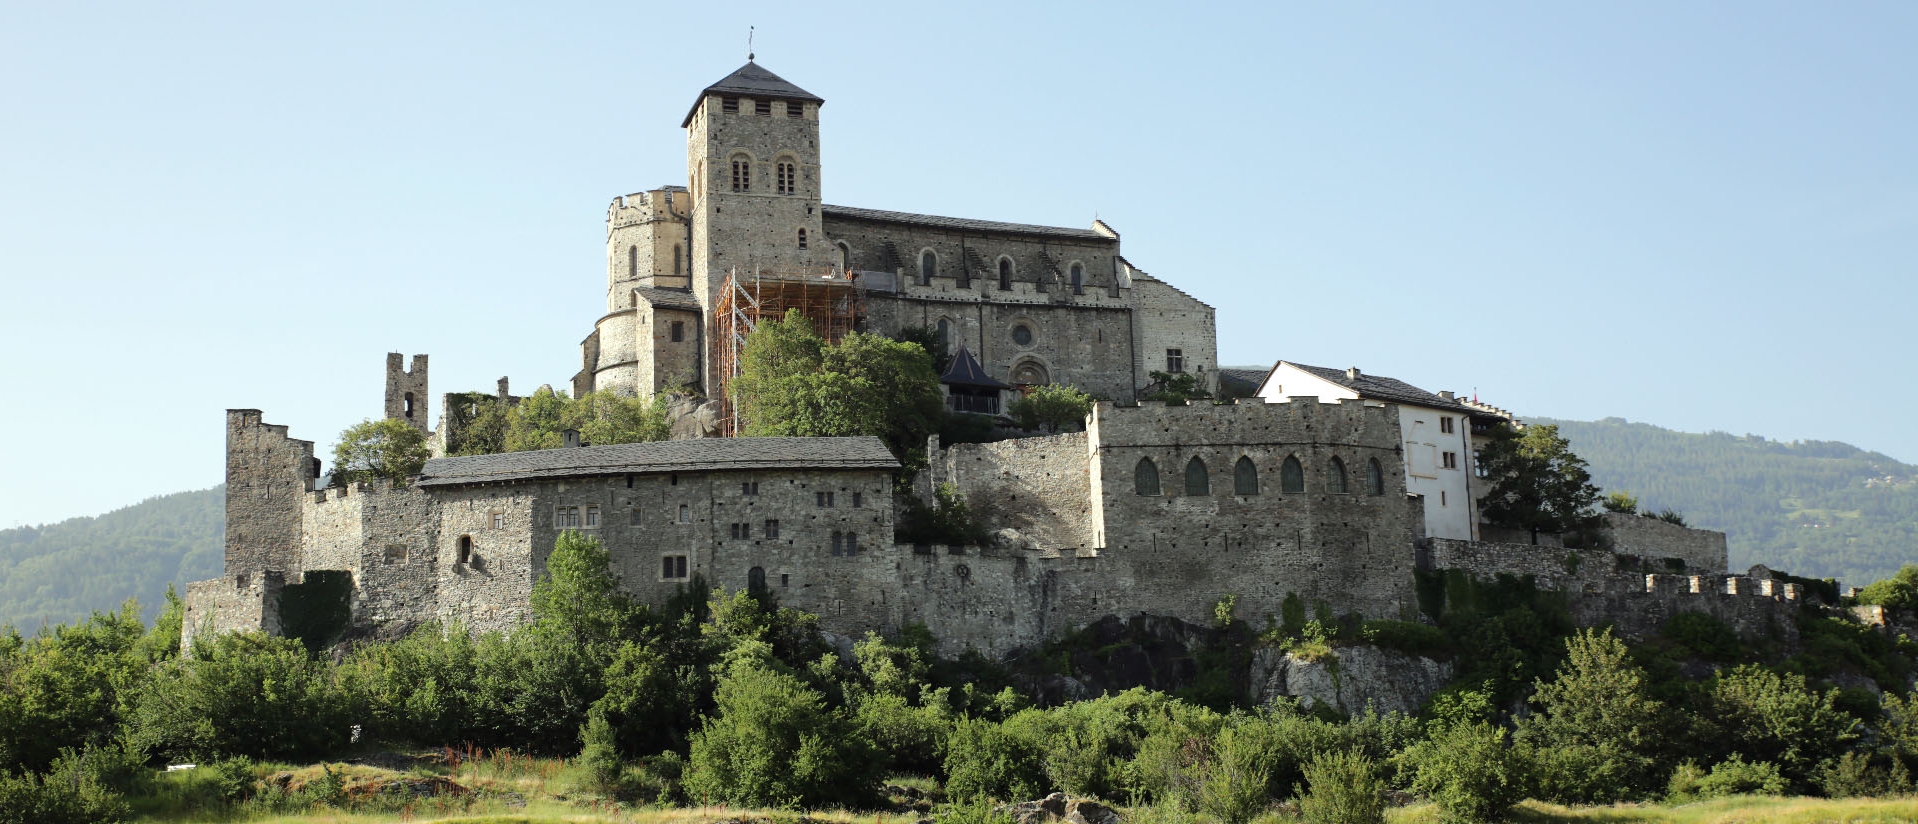 Basilique et château de Valère, autrefois demeure des chanoines du Chapitre cathédrale de Sion | © B. Hallet